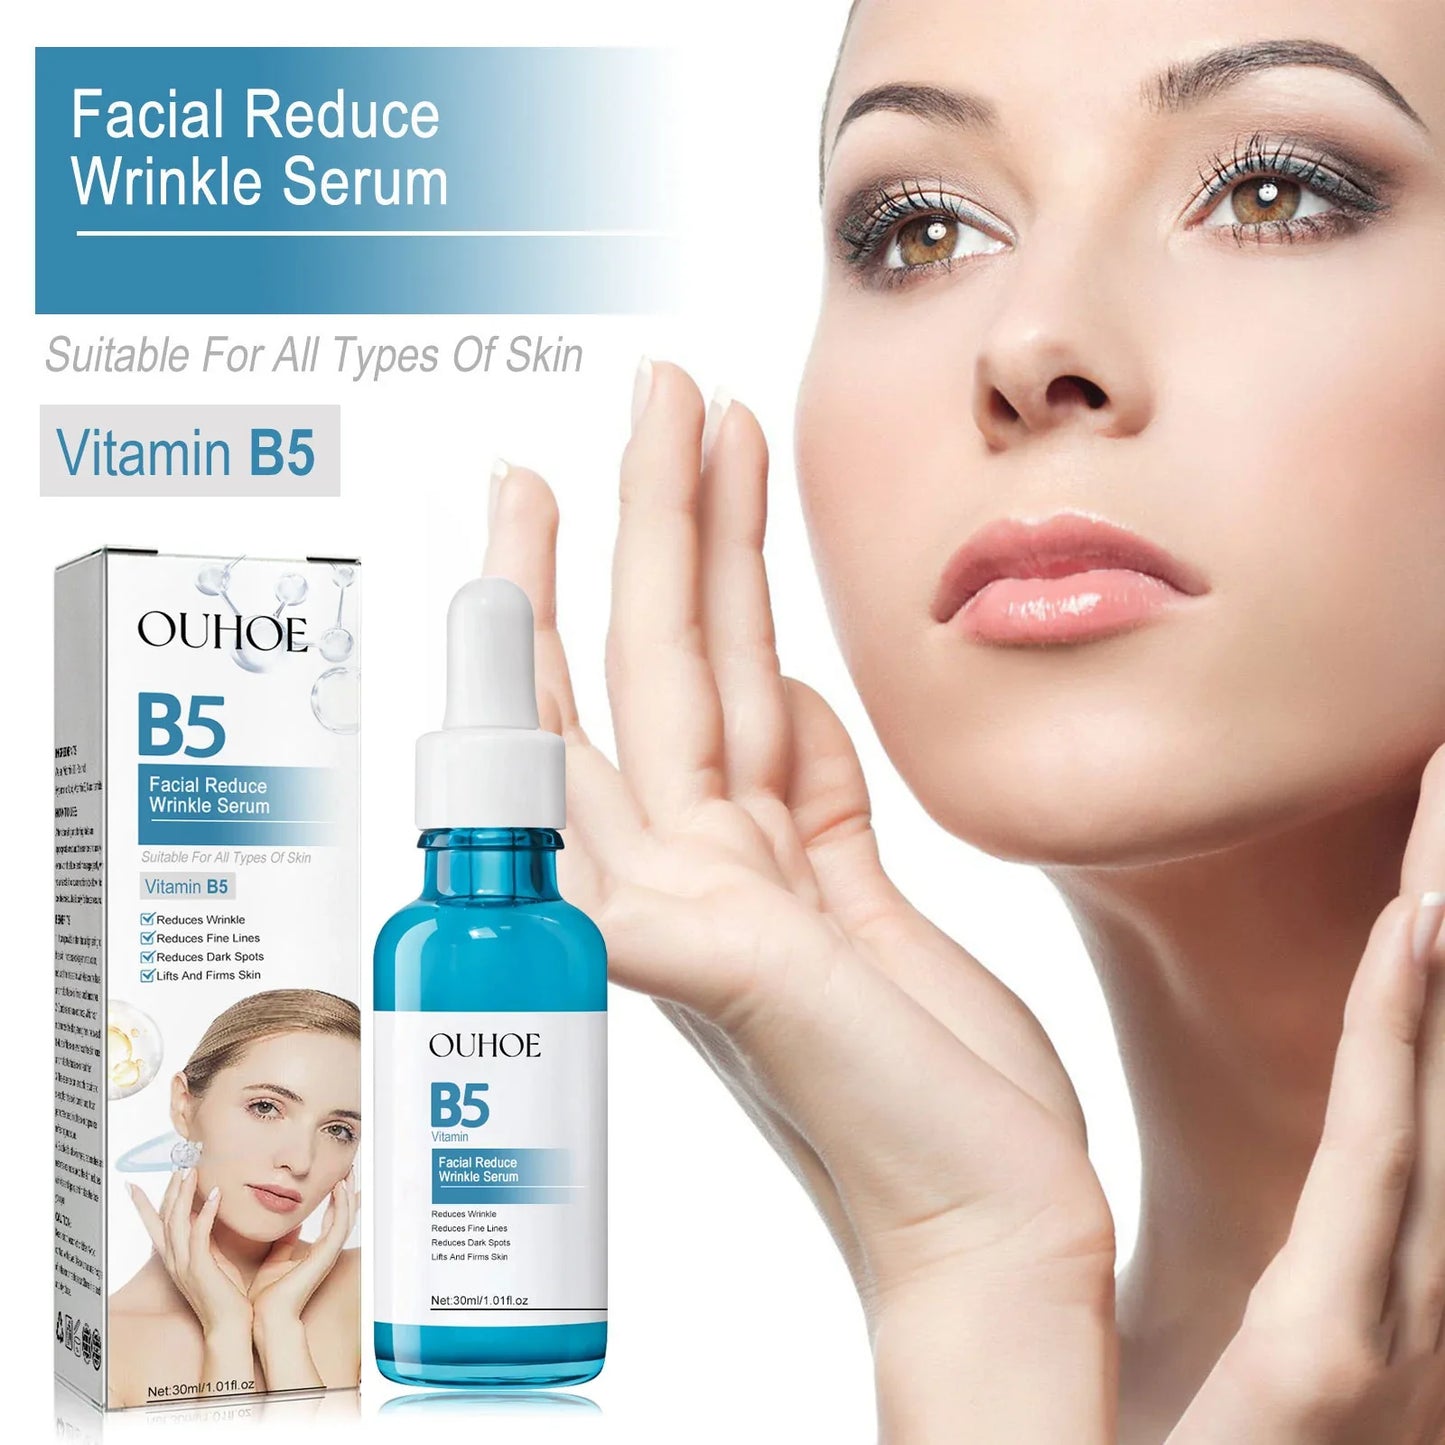 Facial Anti-Wrinkle serum with B5